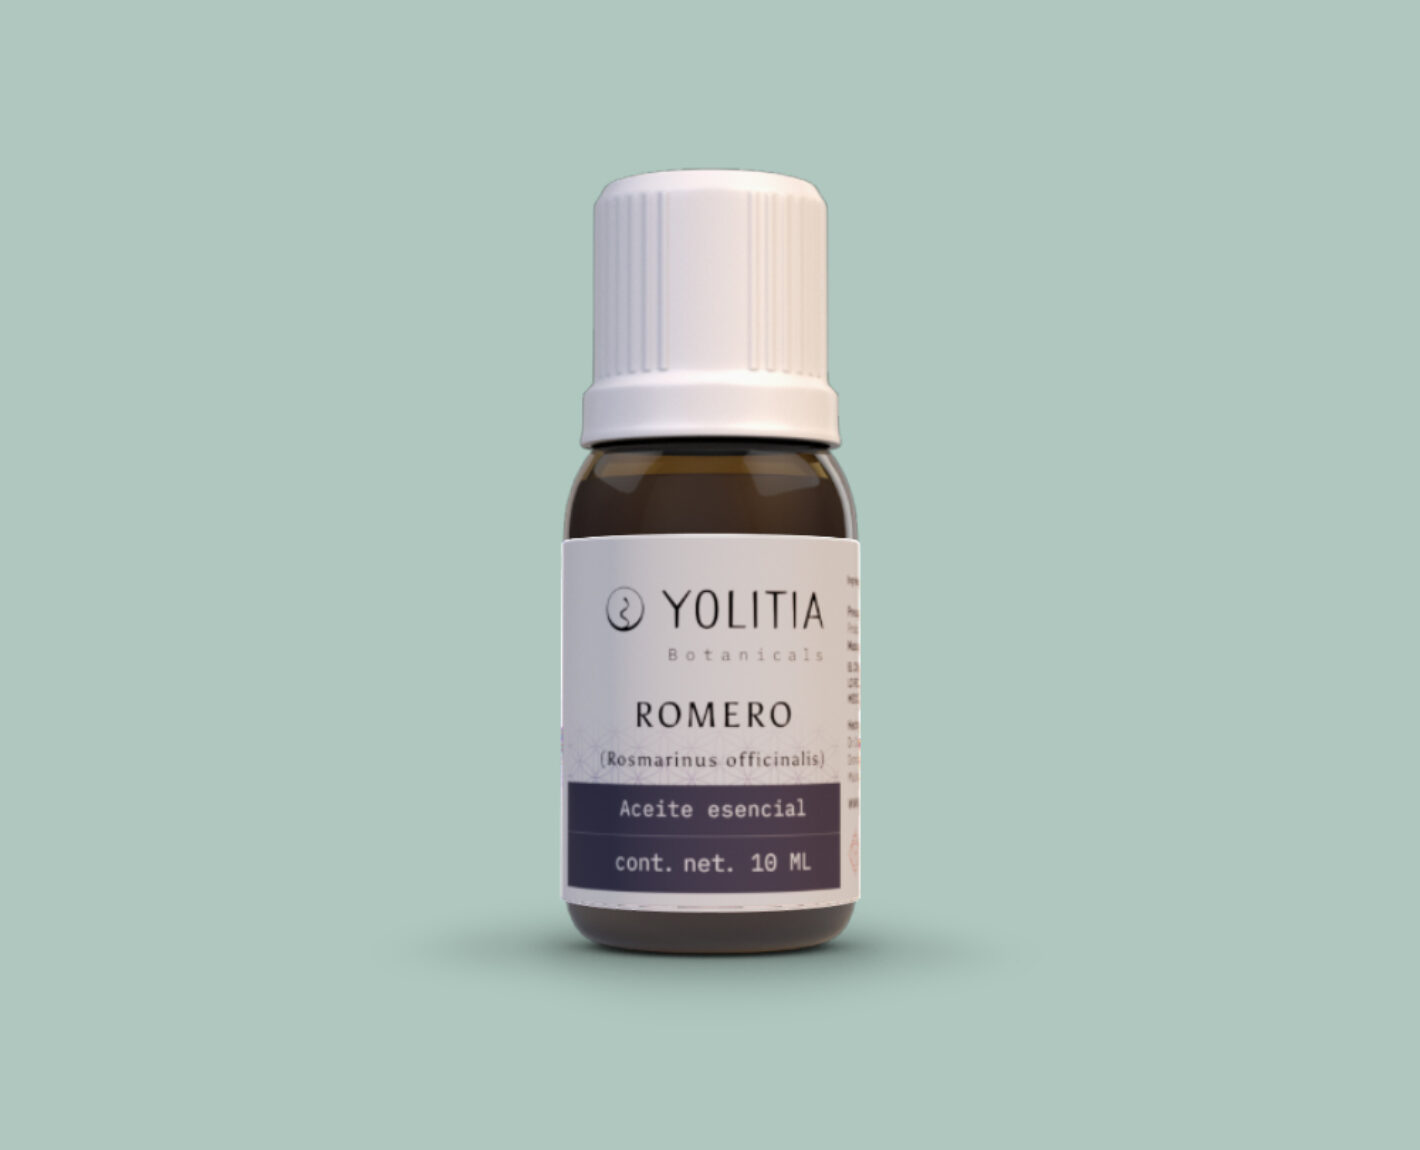 ROMERO (Rosmarinus officinalis) Aceite esencial